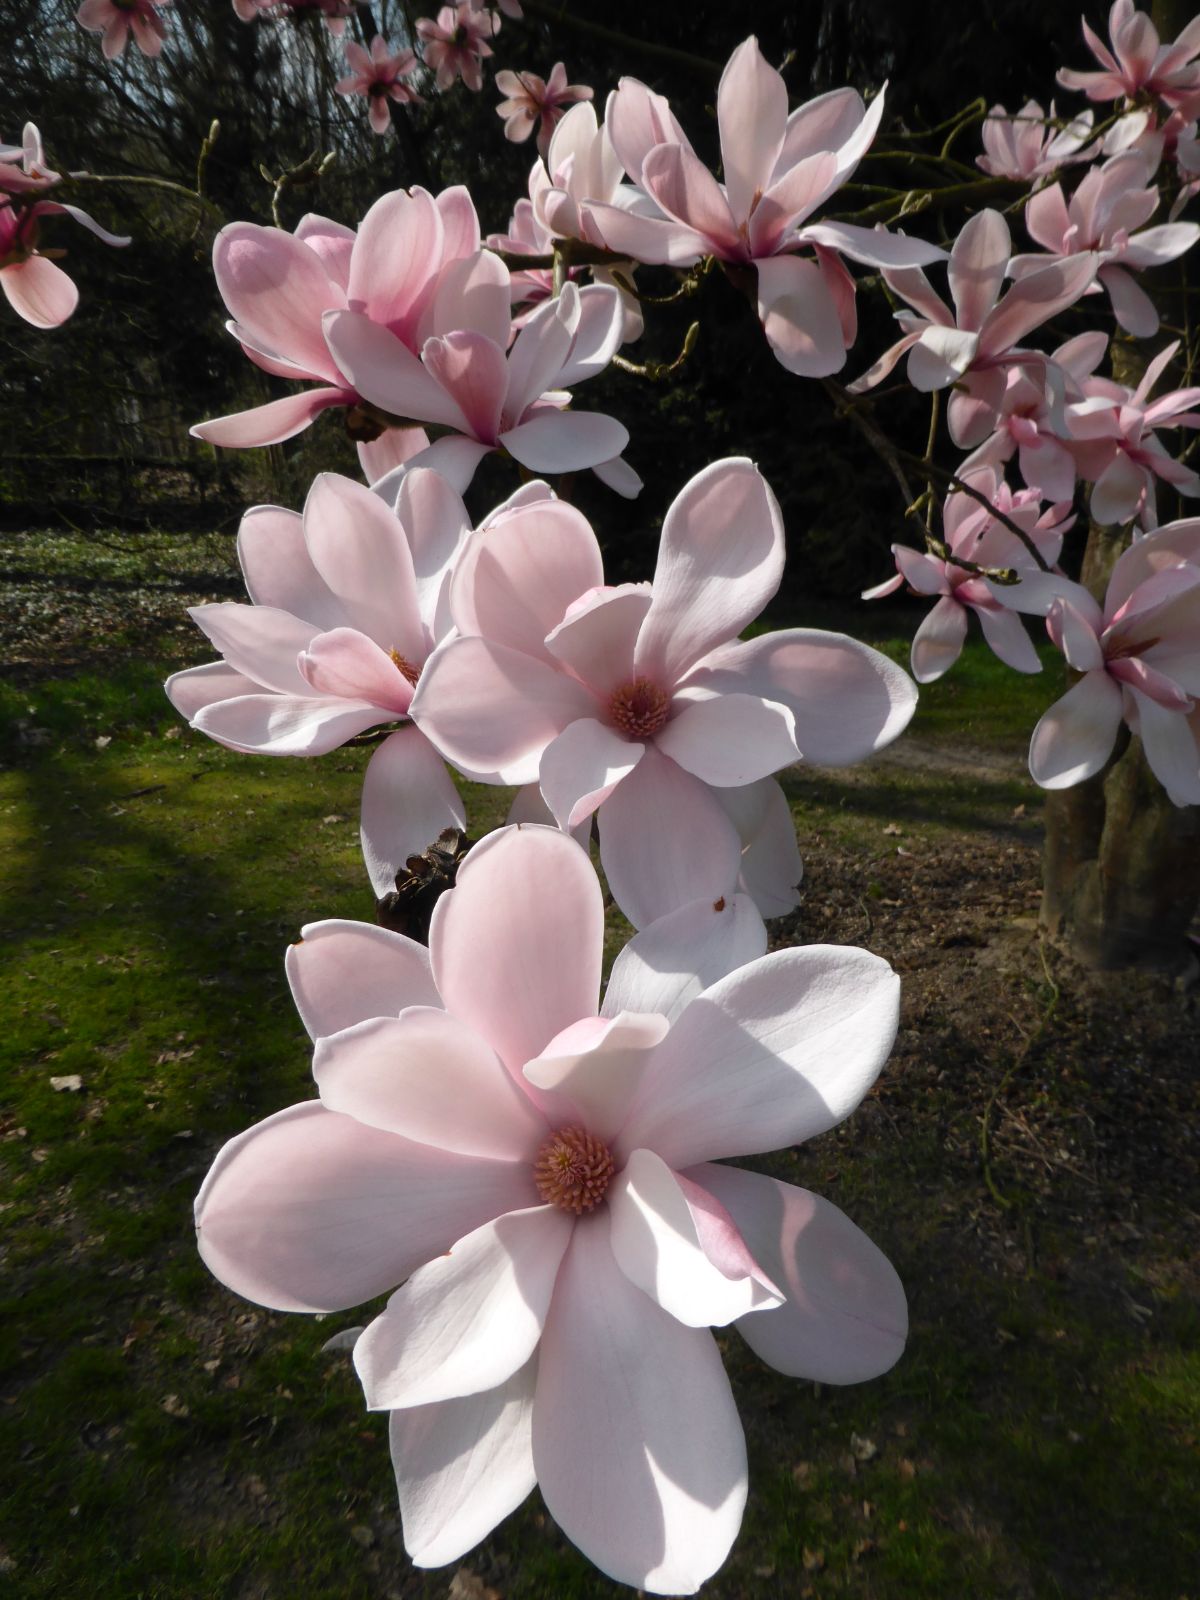 https://www.treesandshrubsonline.org/site/assets/files/3600/magnolia-1.jpg